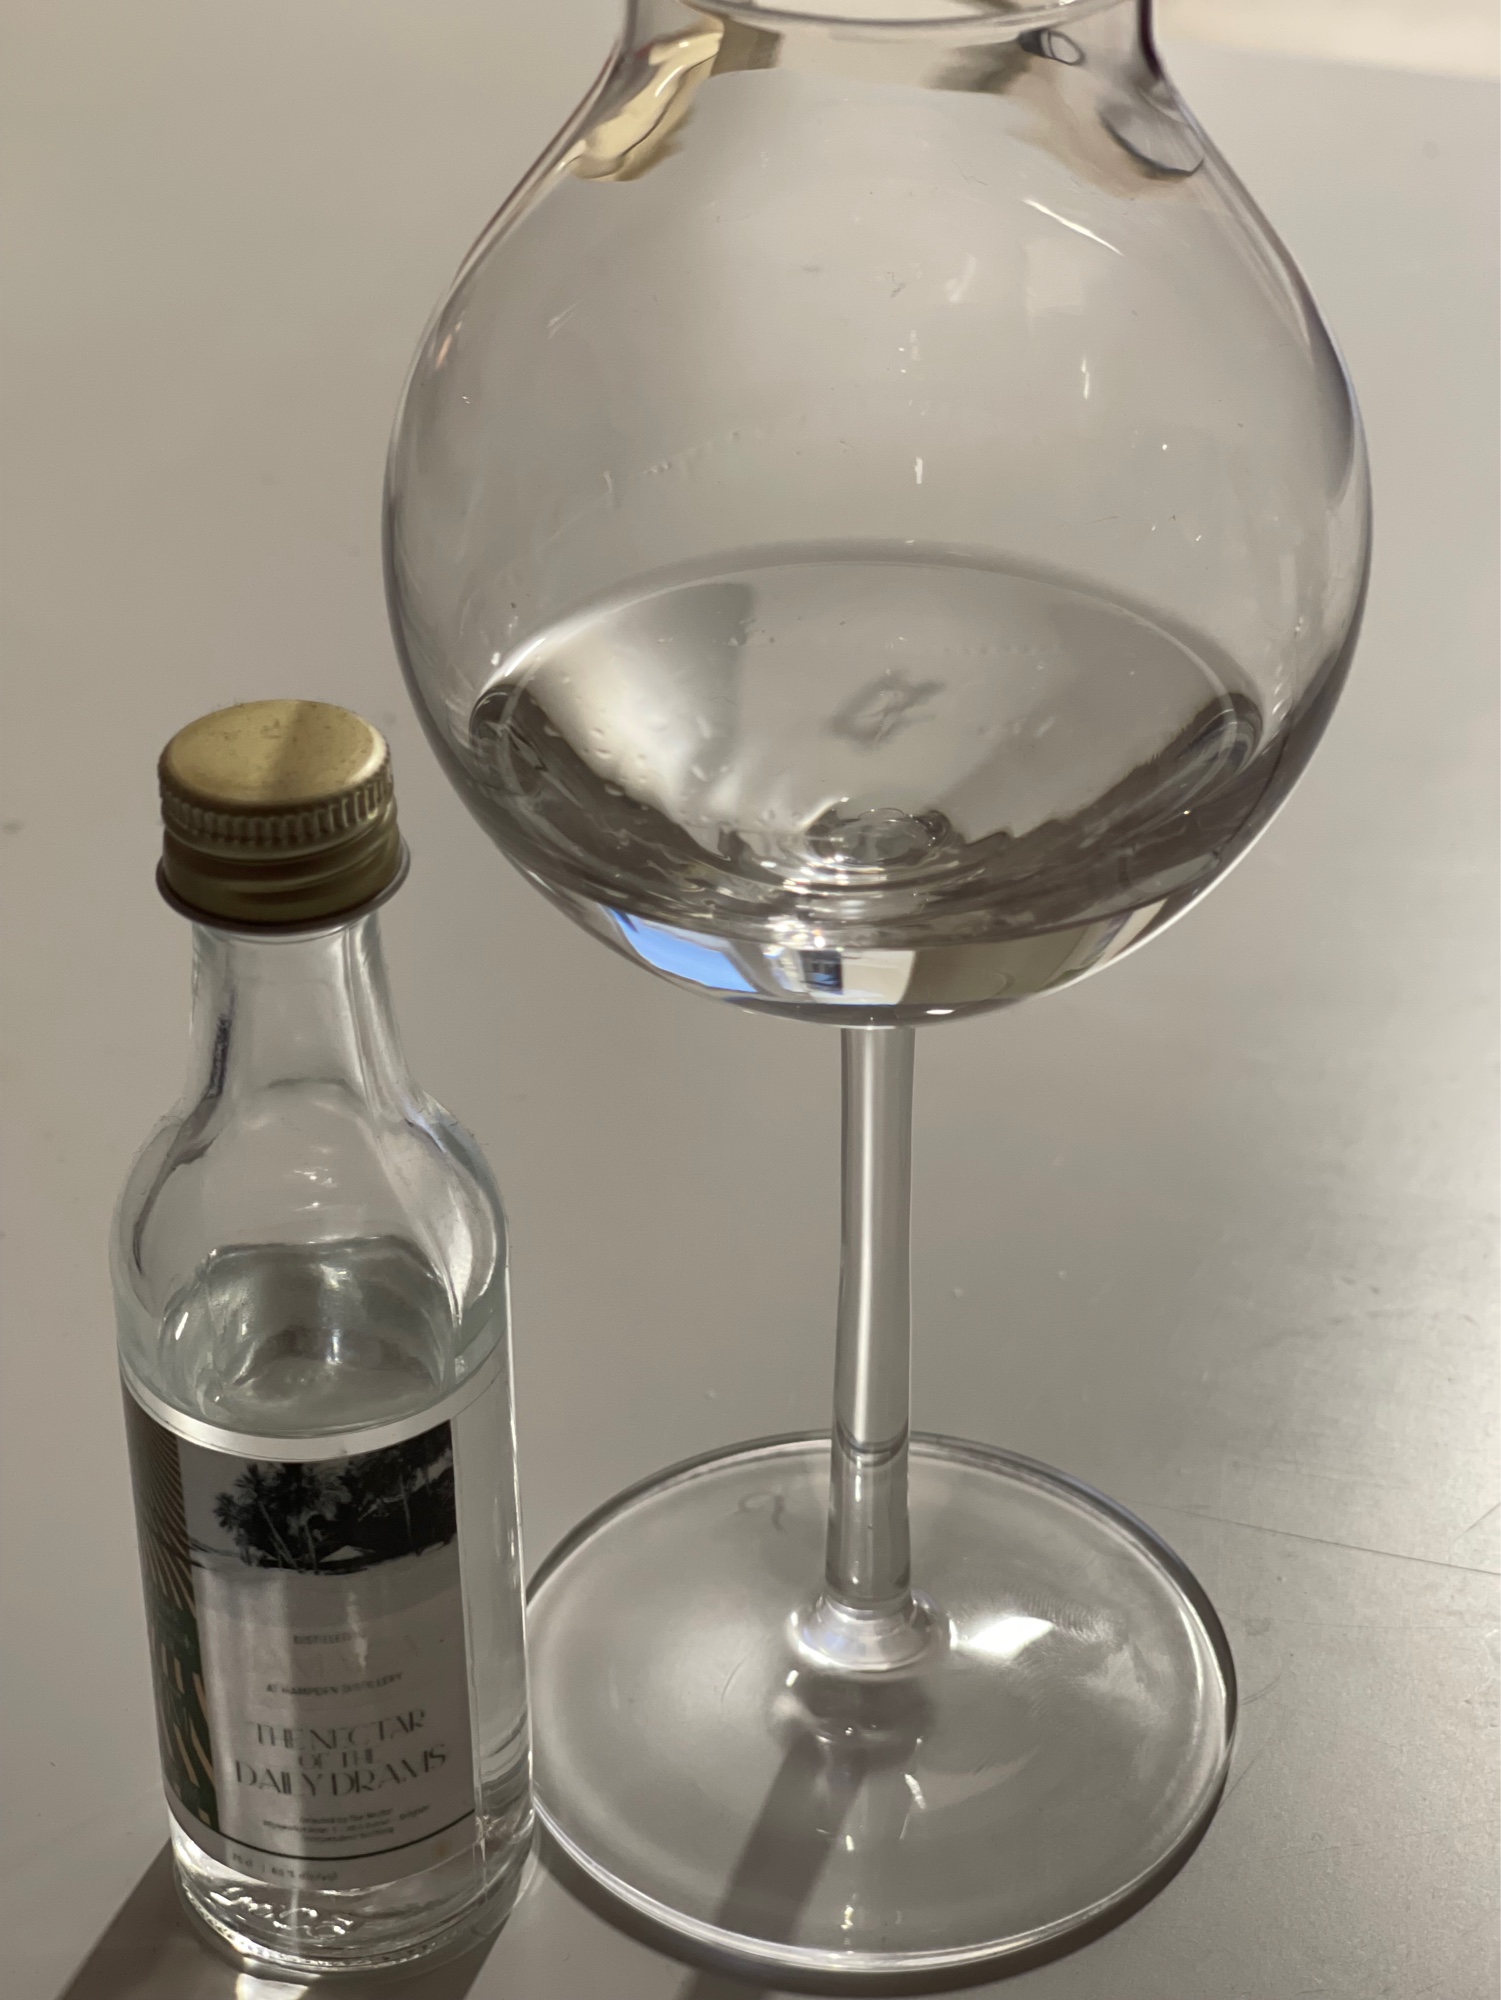 Photo of the bottle taken from user Thunderbird